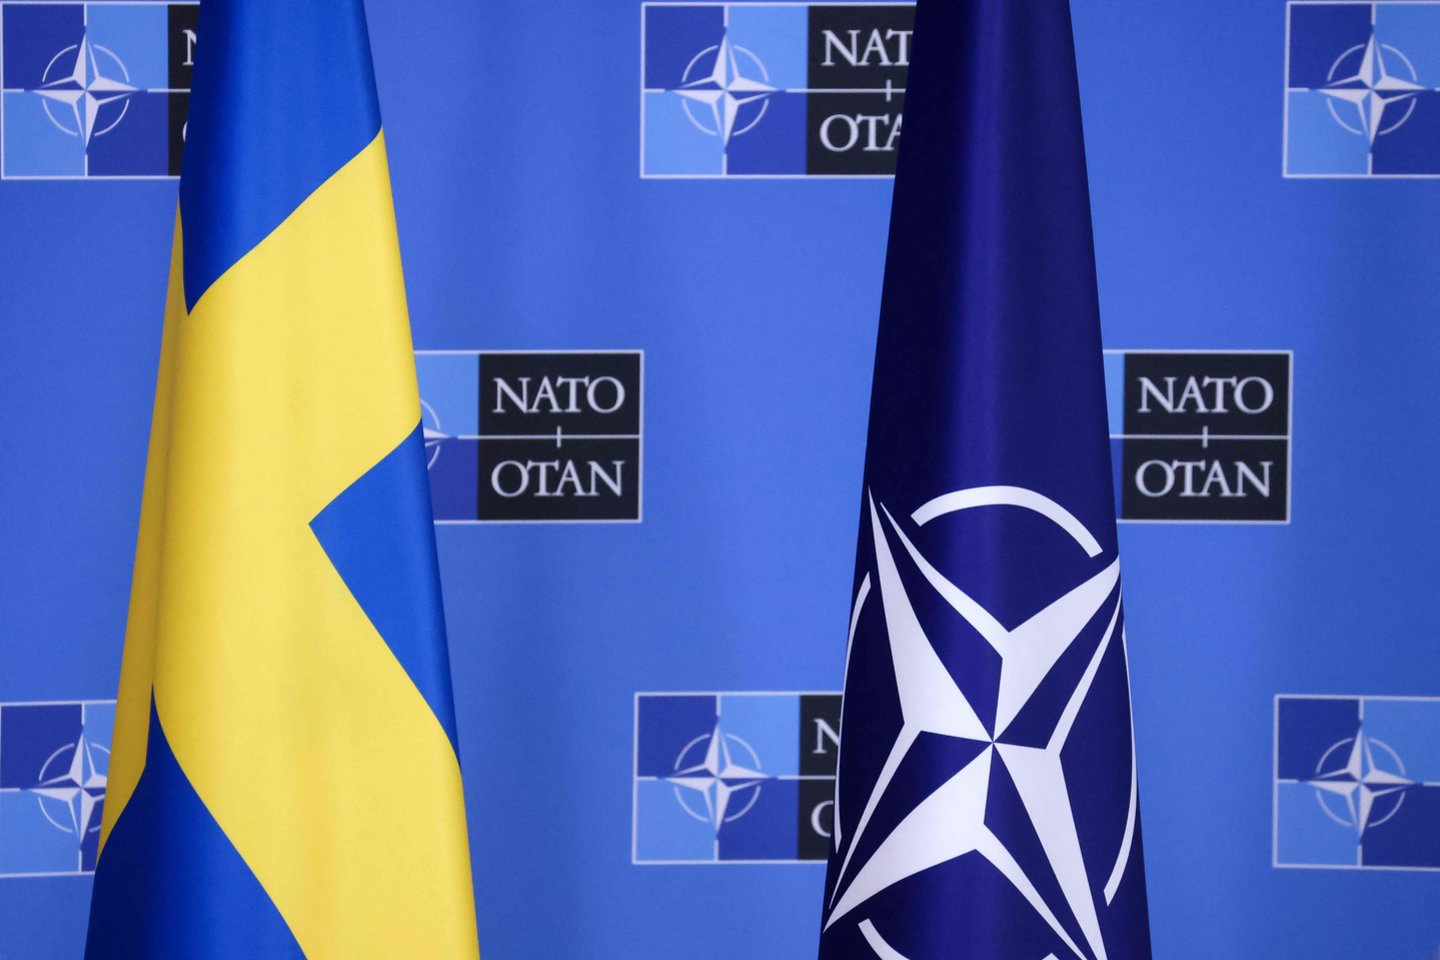  Švedijos ir NATO vėliavos.<br>AFP/Scanpix nuotr.